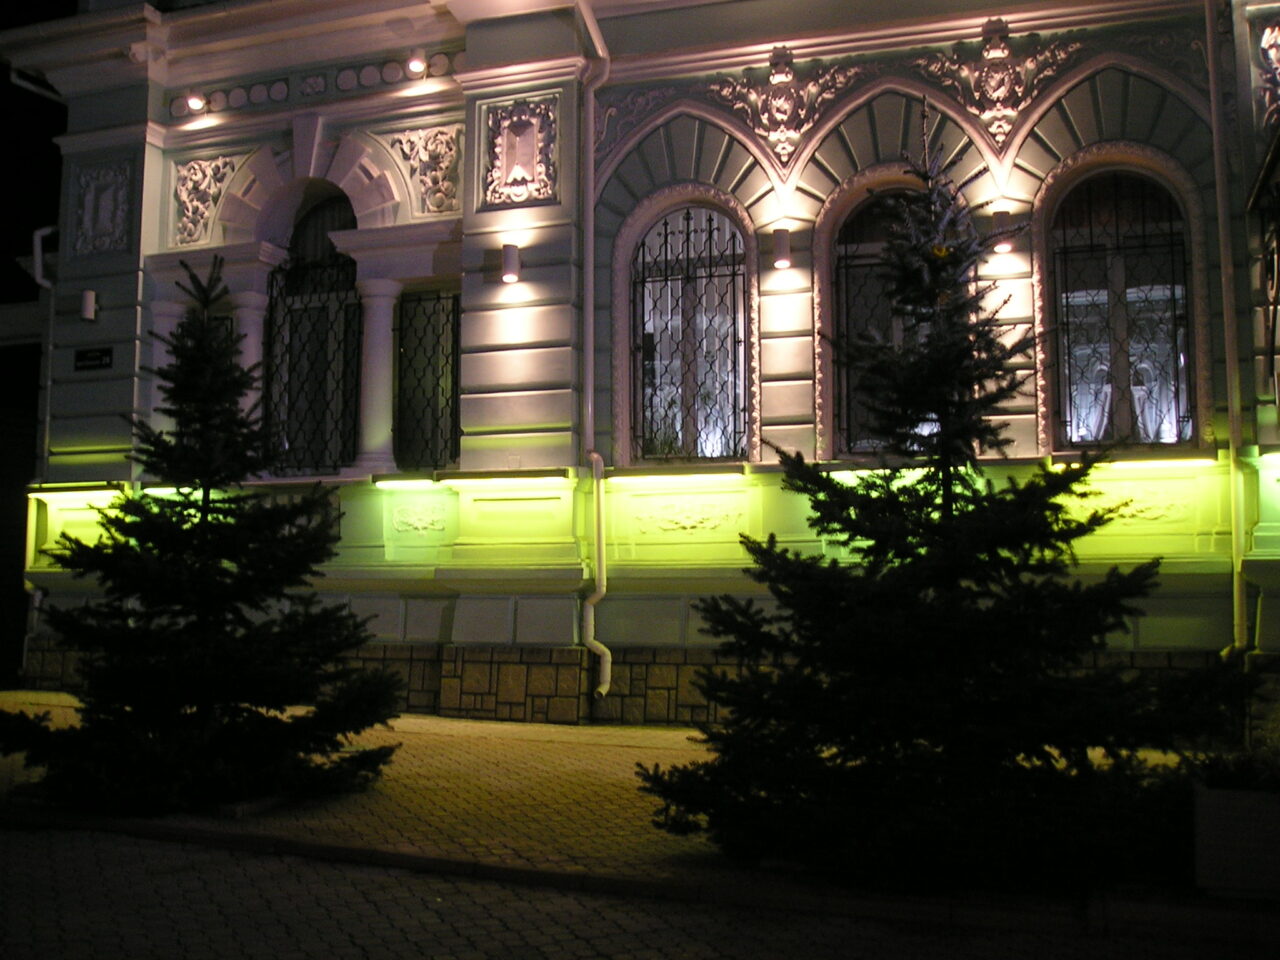 Архітектурна підсвітка фасаду будівлі по вул.Нікольска м. Миколаїв 4 2009р.